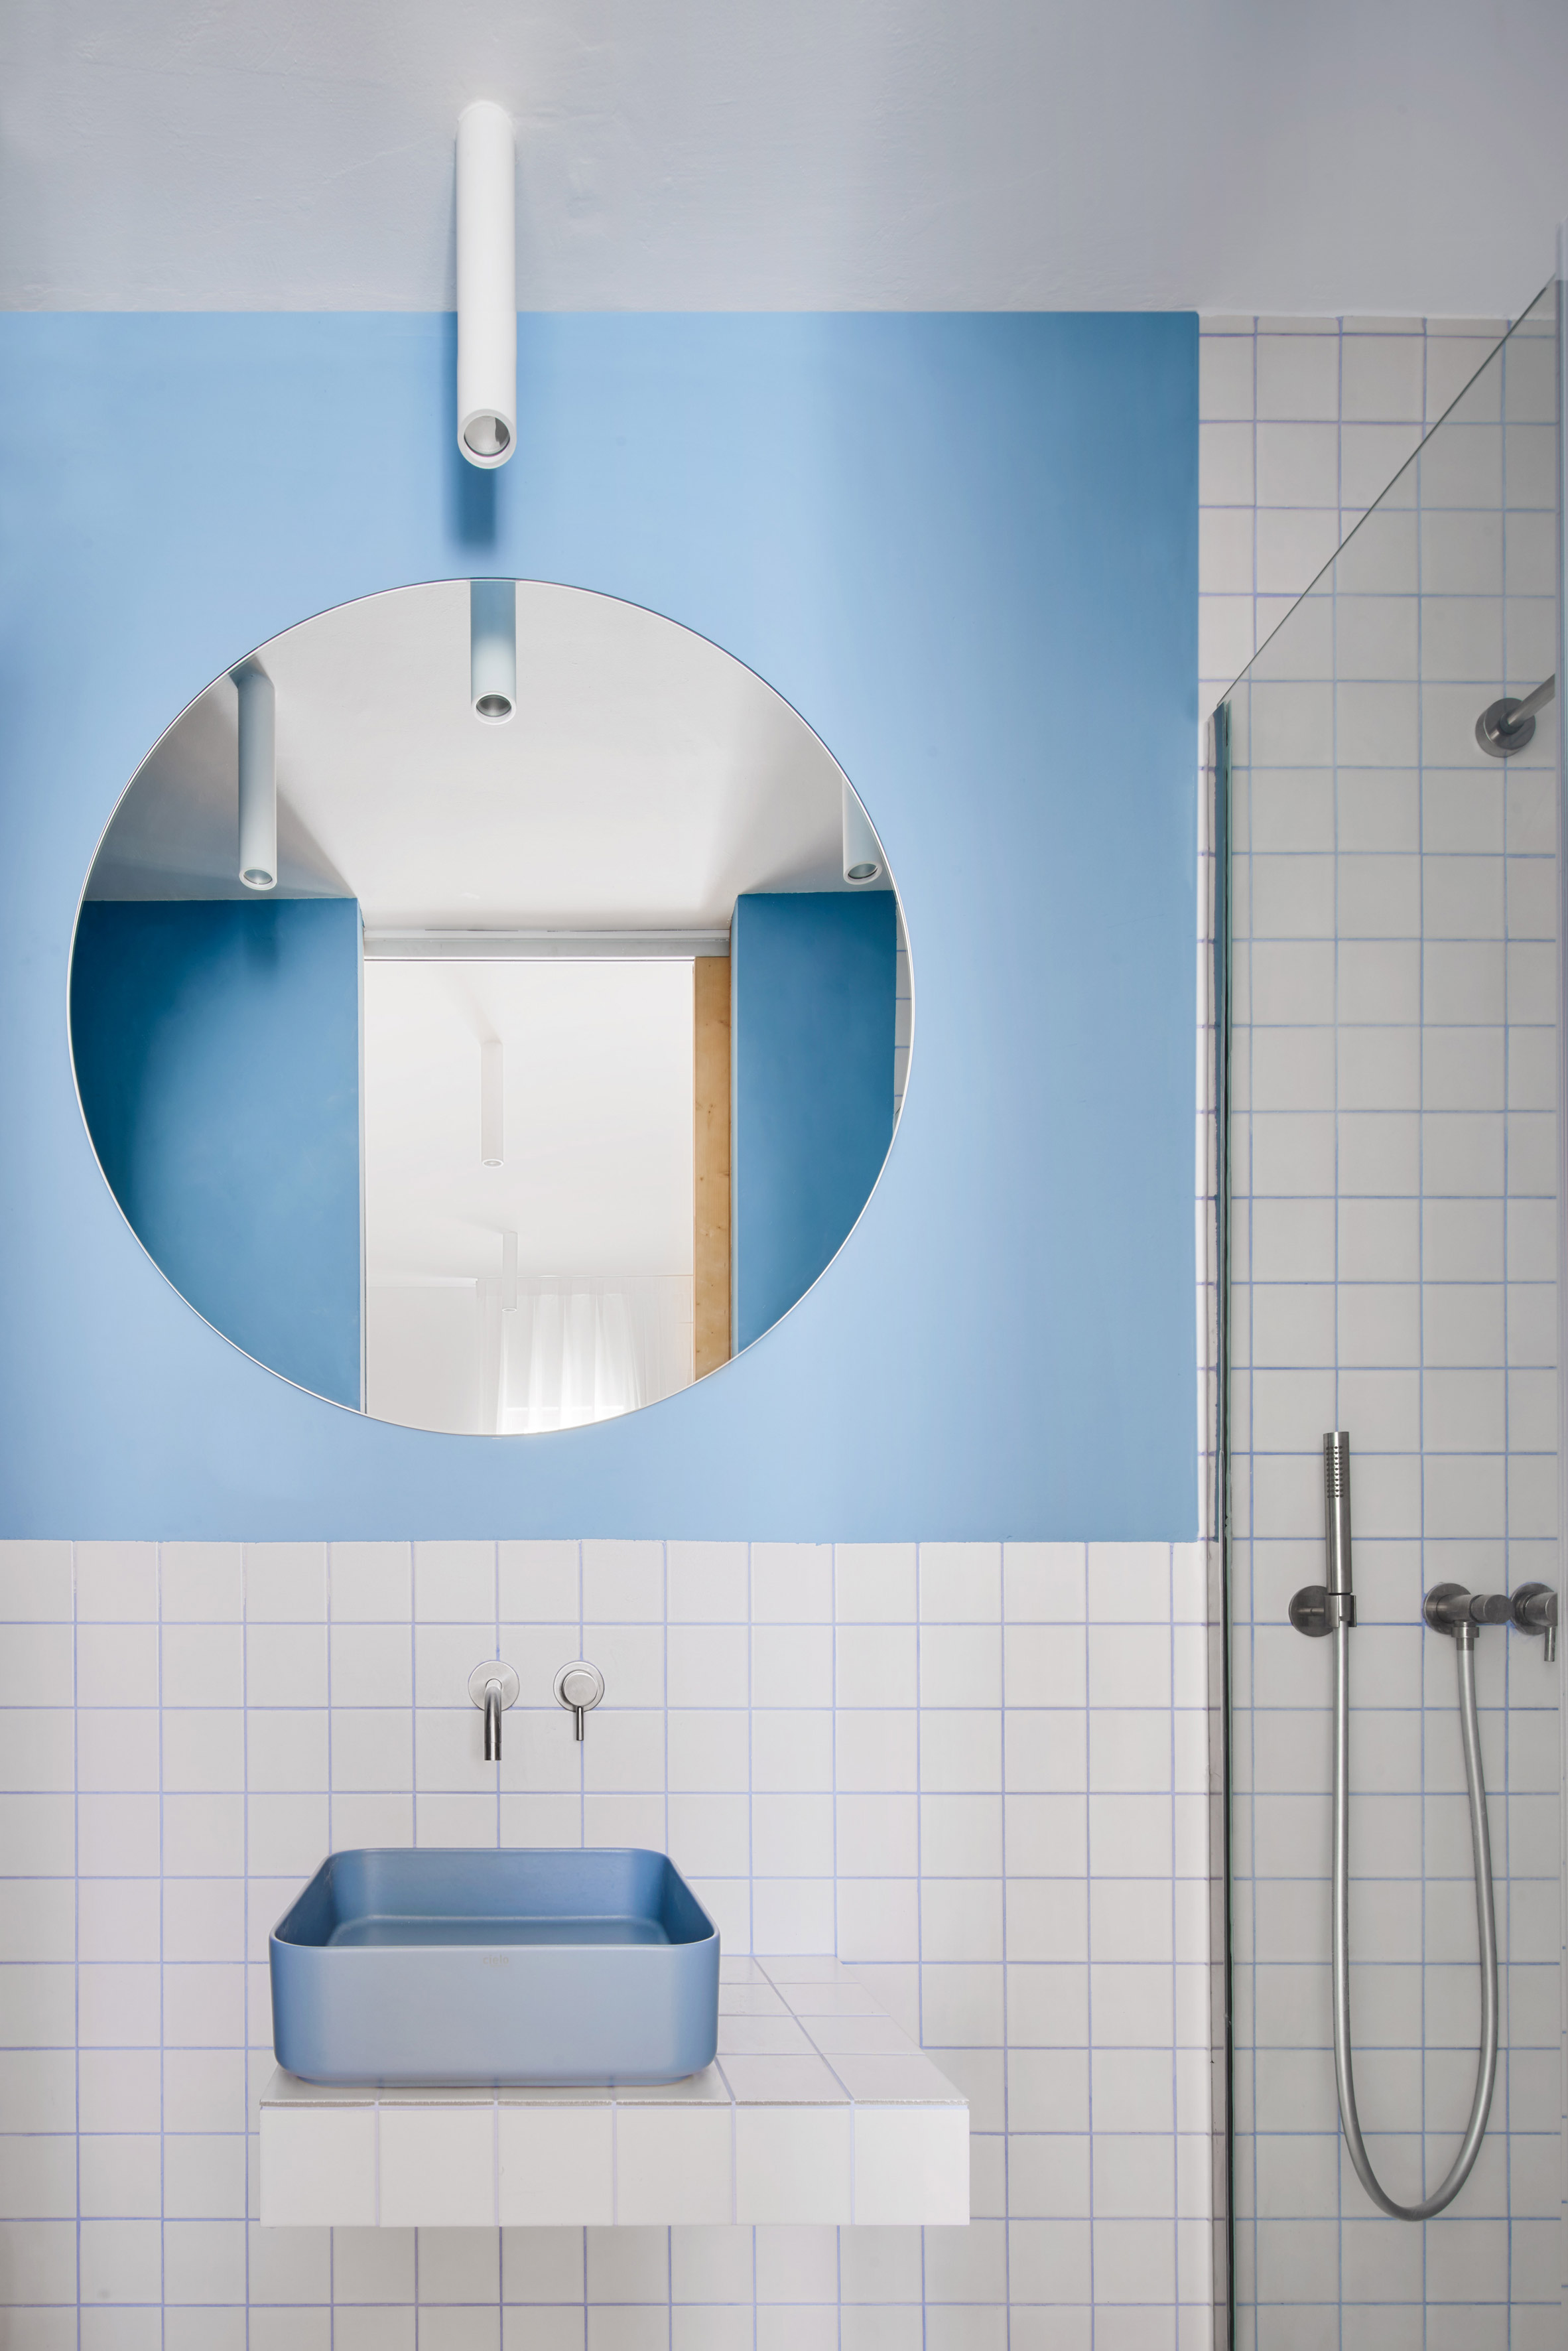 Gallery House by Raúl Sánchez Architects blue bathroom